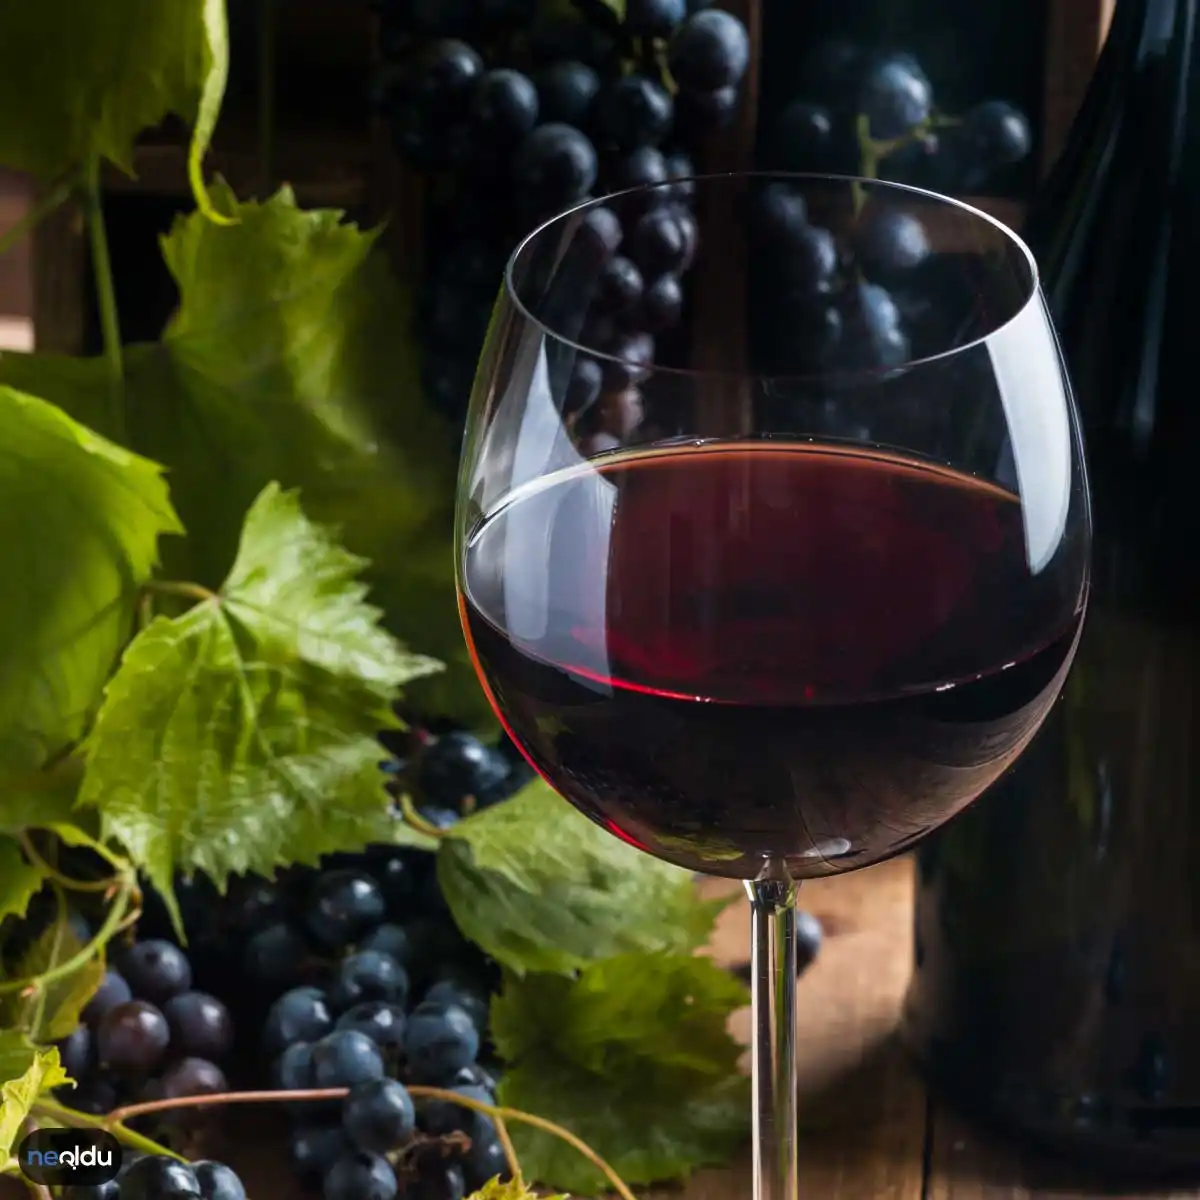 Yıllanmış Şarapları Saklama Koşulları Nelerdir?